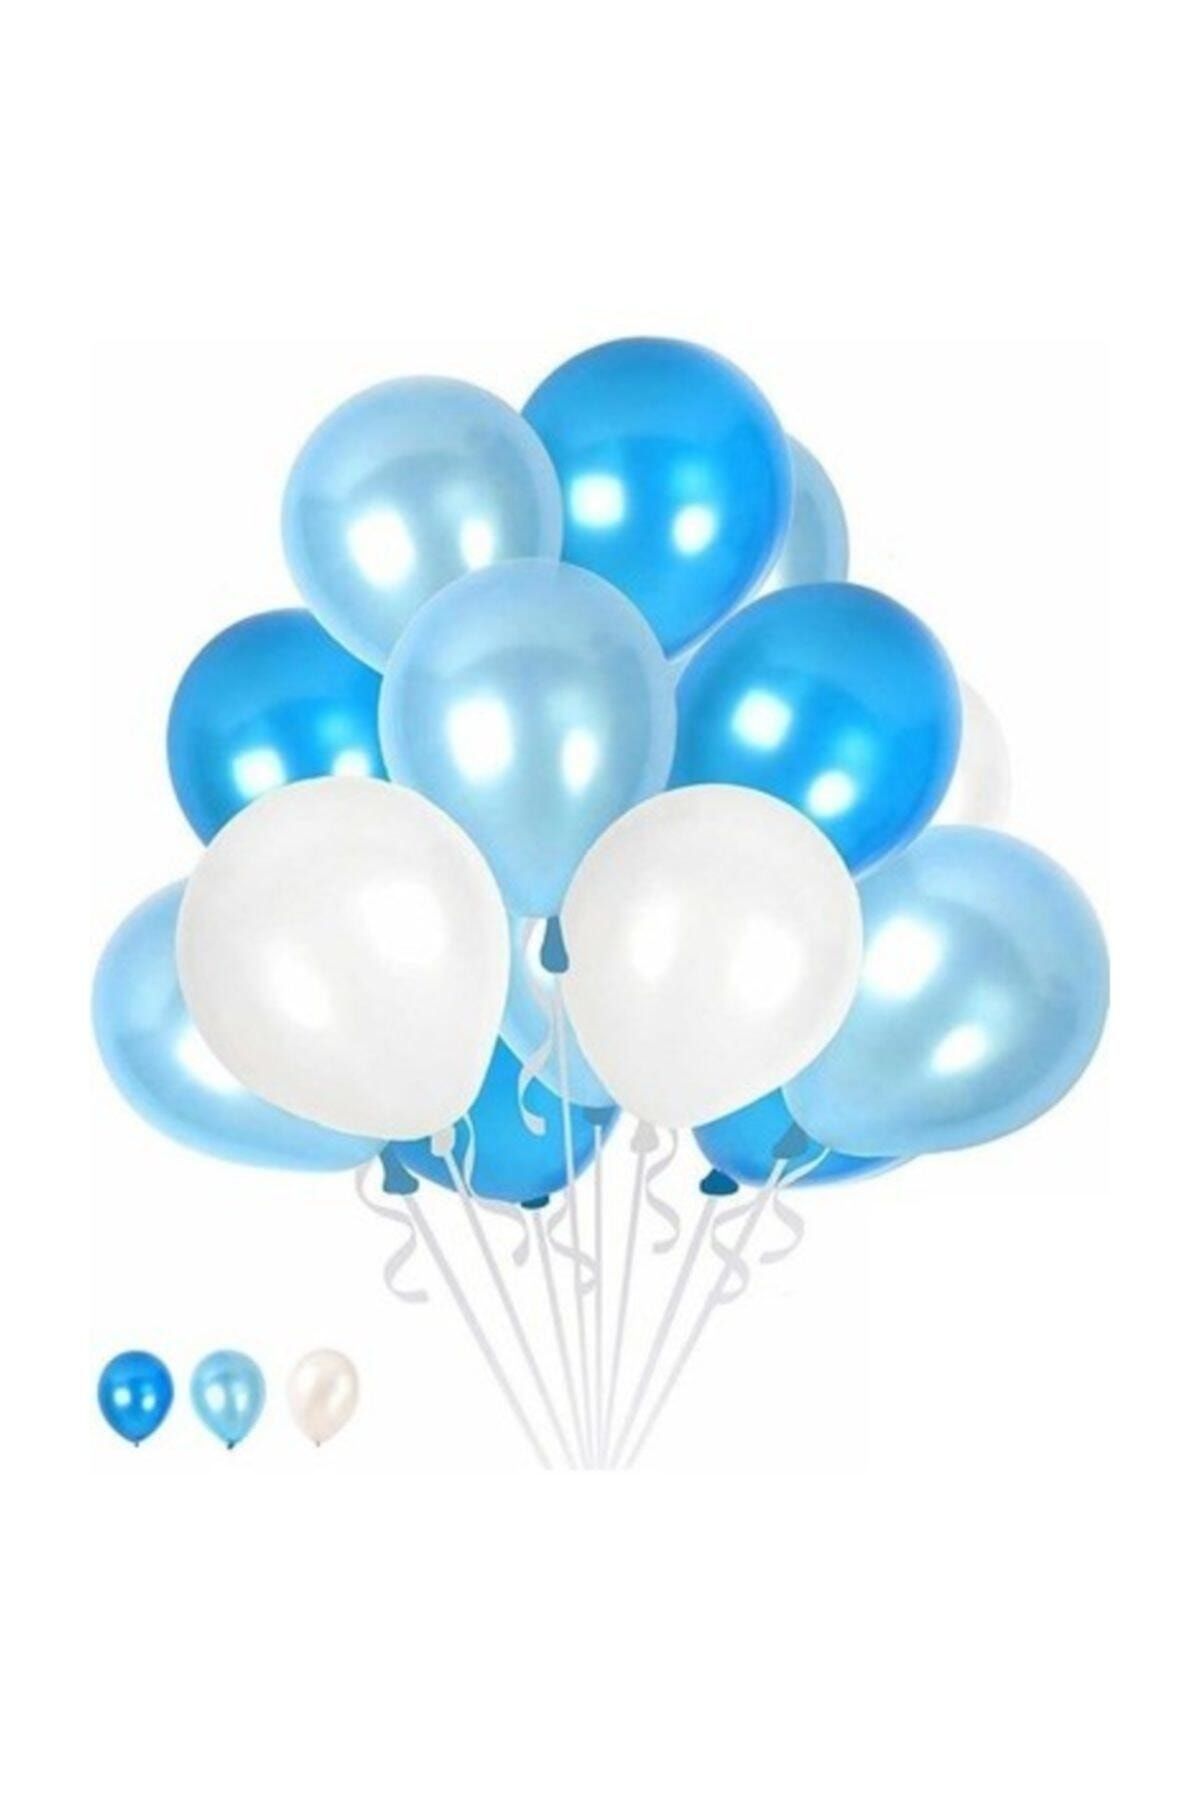 TATLI GÜNLER 10 Mavi 10 Koyu Mavi 10 Beyaz Konsept Balonlar Metalik Parlak 30-35 Cm